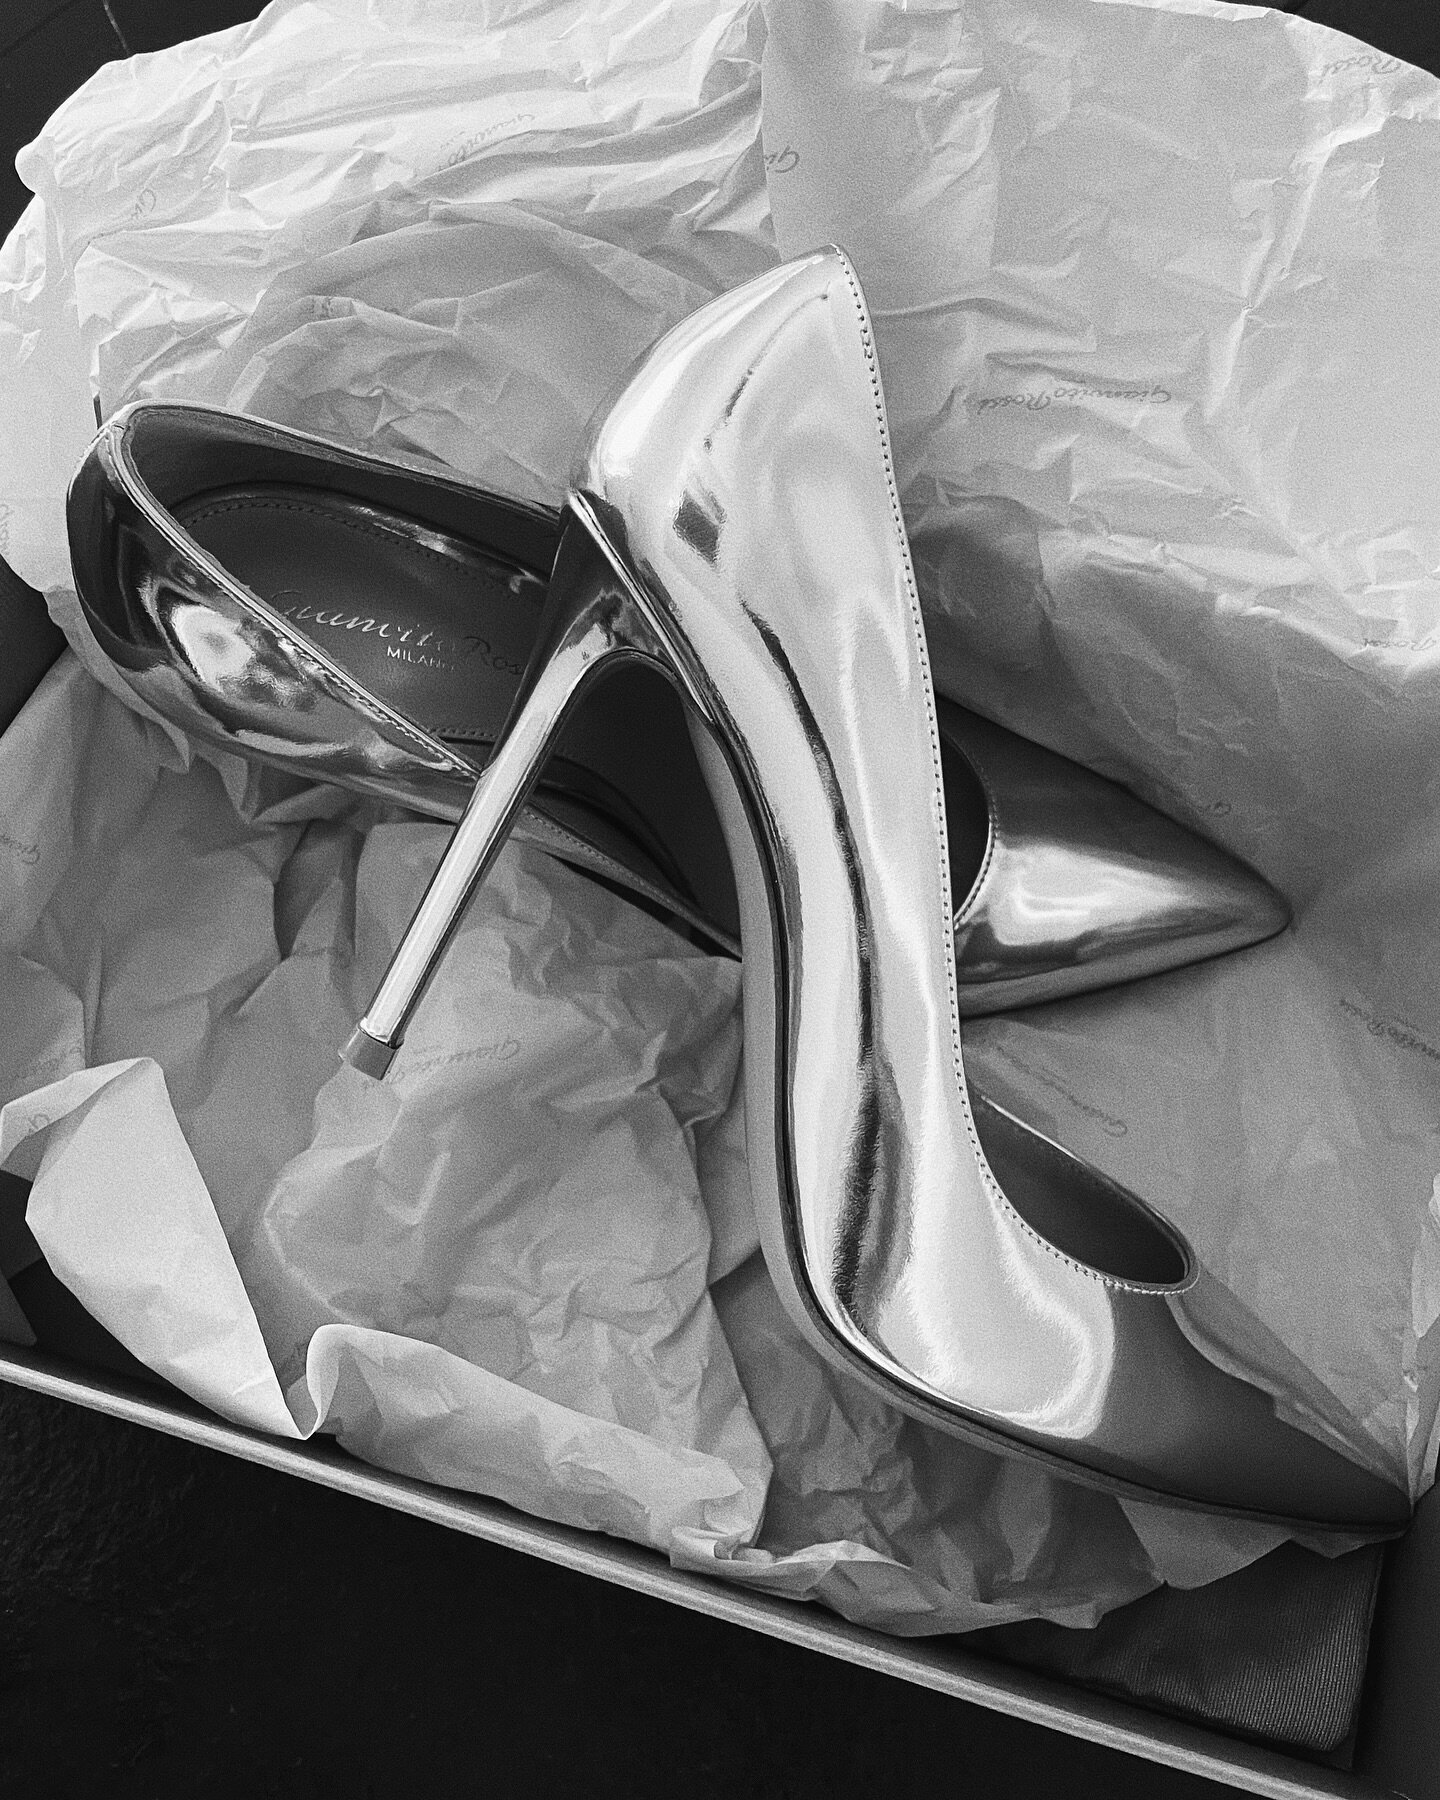 shine bright ✨ chrome bridal heels from @giambattistavalliparis 

#weddingshoes #bridalshoes #giambatistavalli #chromeheels